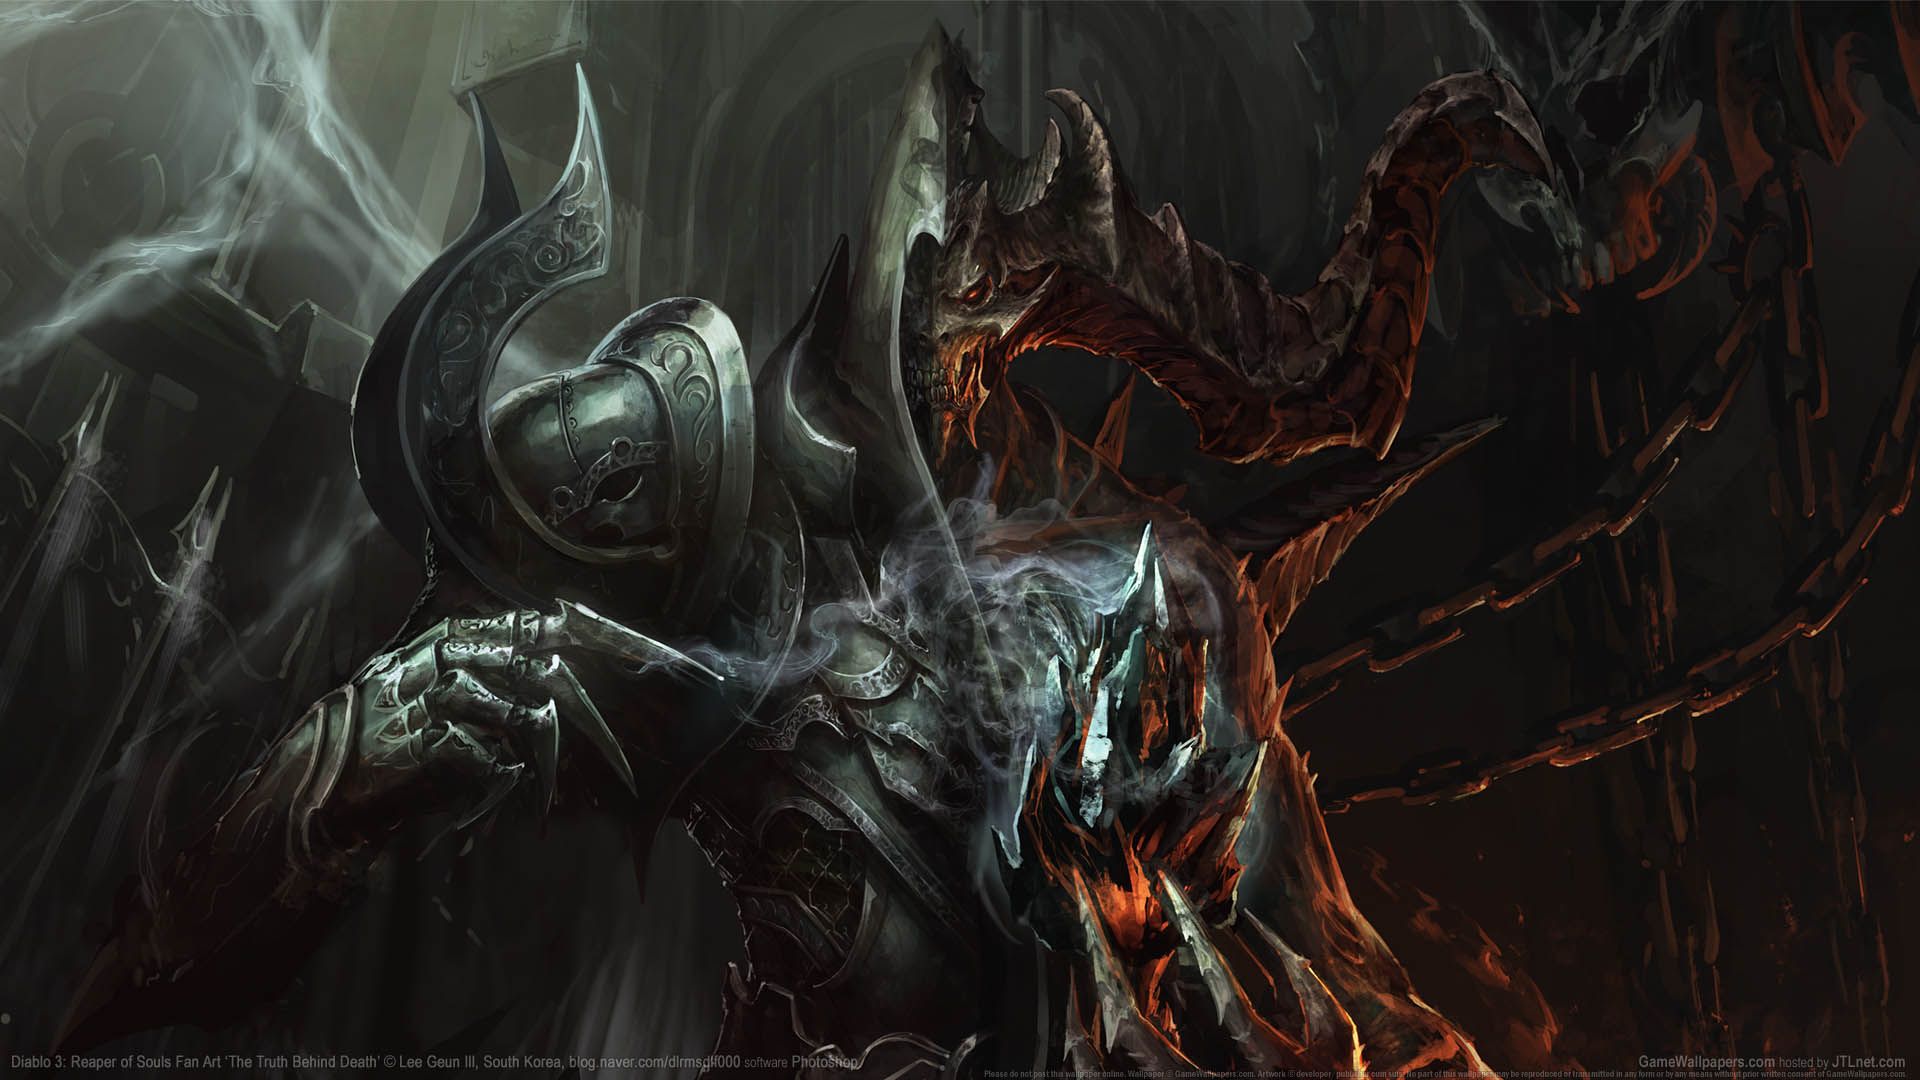  Diablo 3 1920x1080 Hintergrundbild 1920x1080. Diablo 3: Reaper of Souls Fan Art Hintergrundbild 02 1920x1080